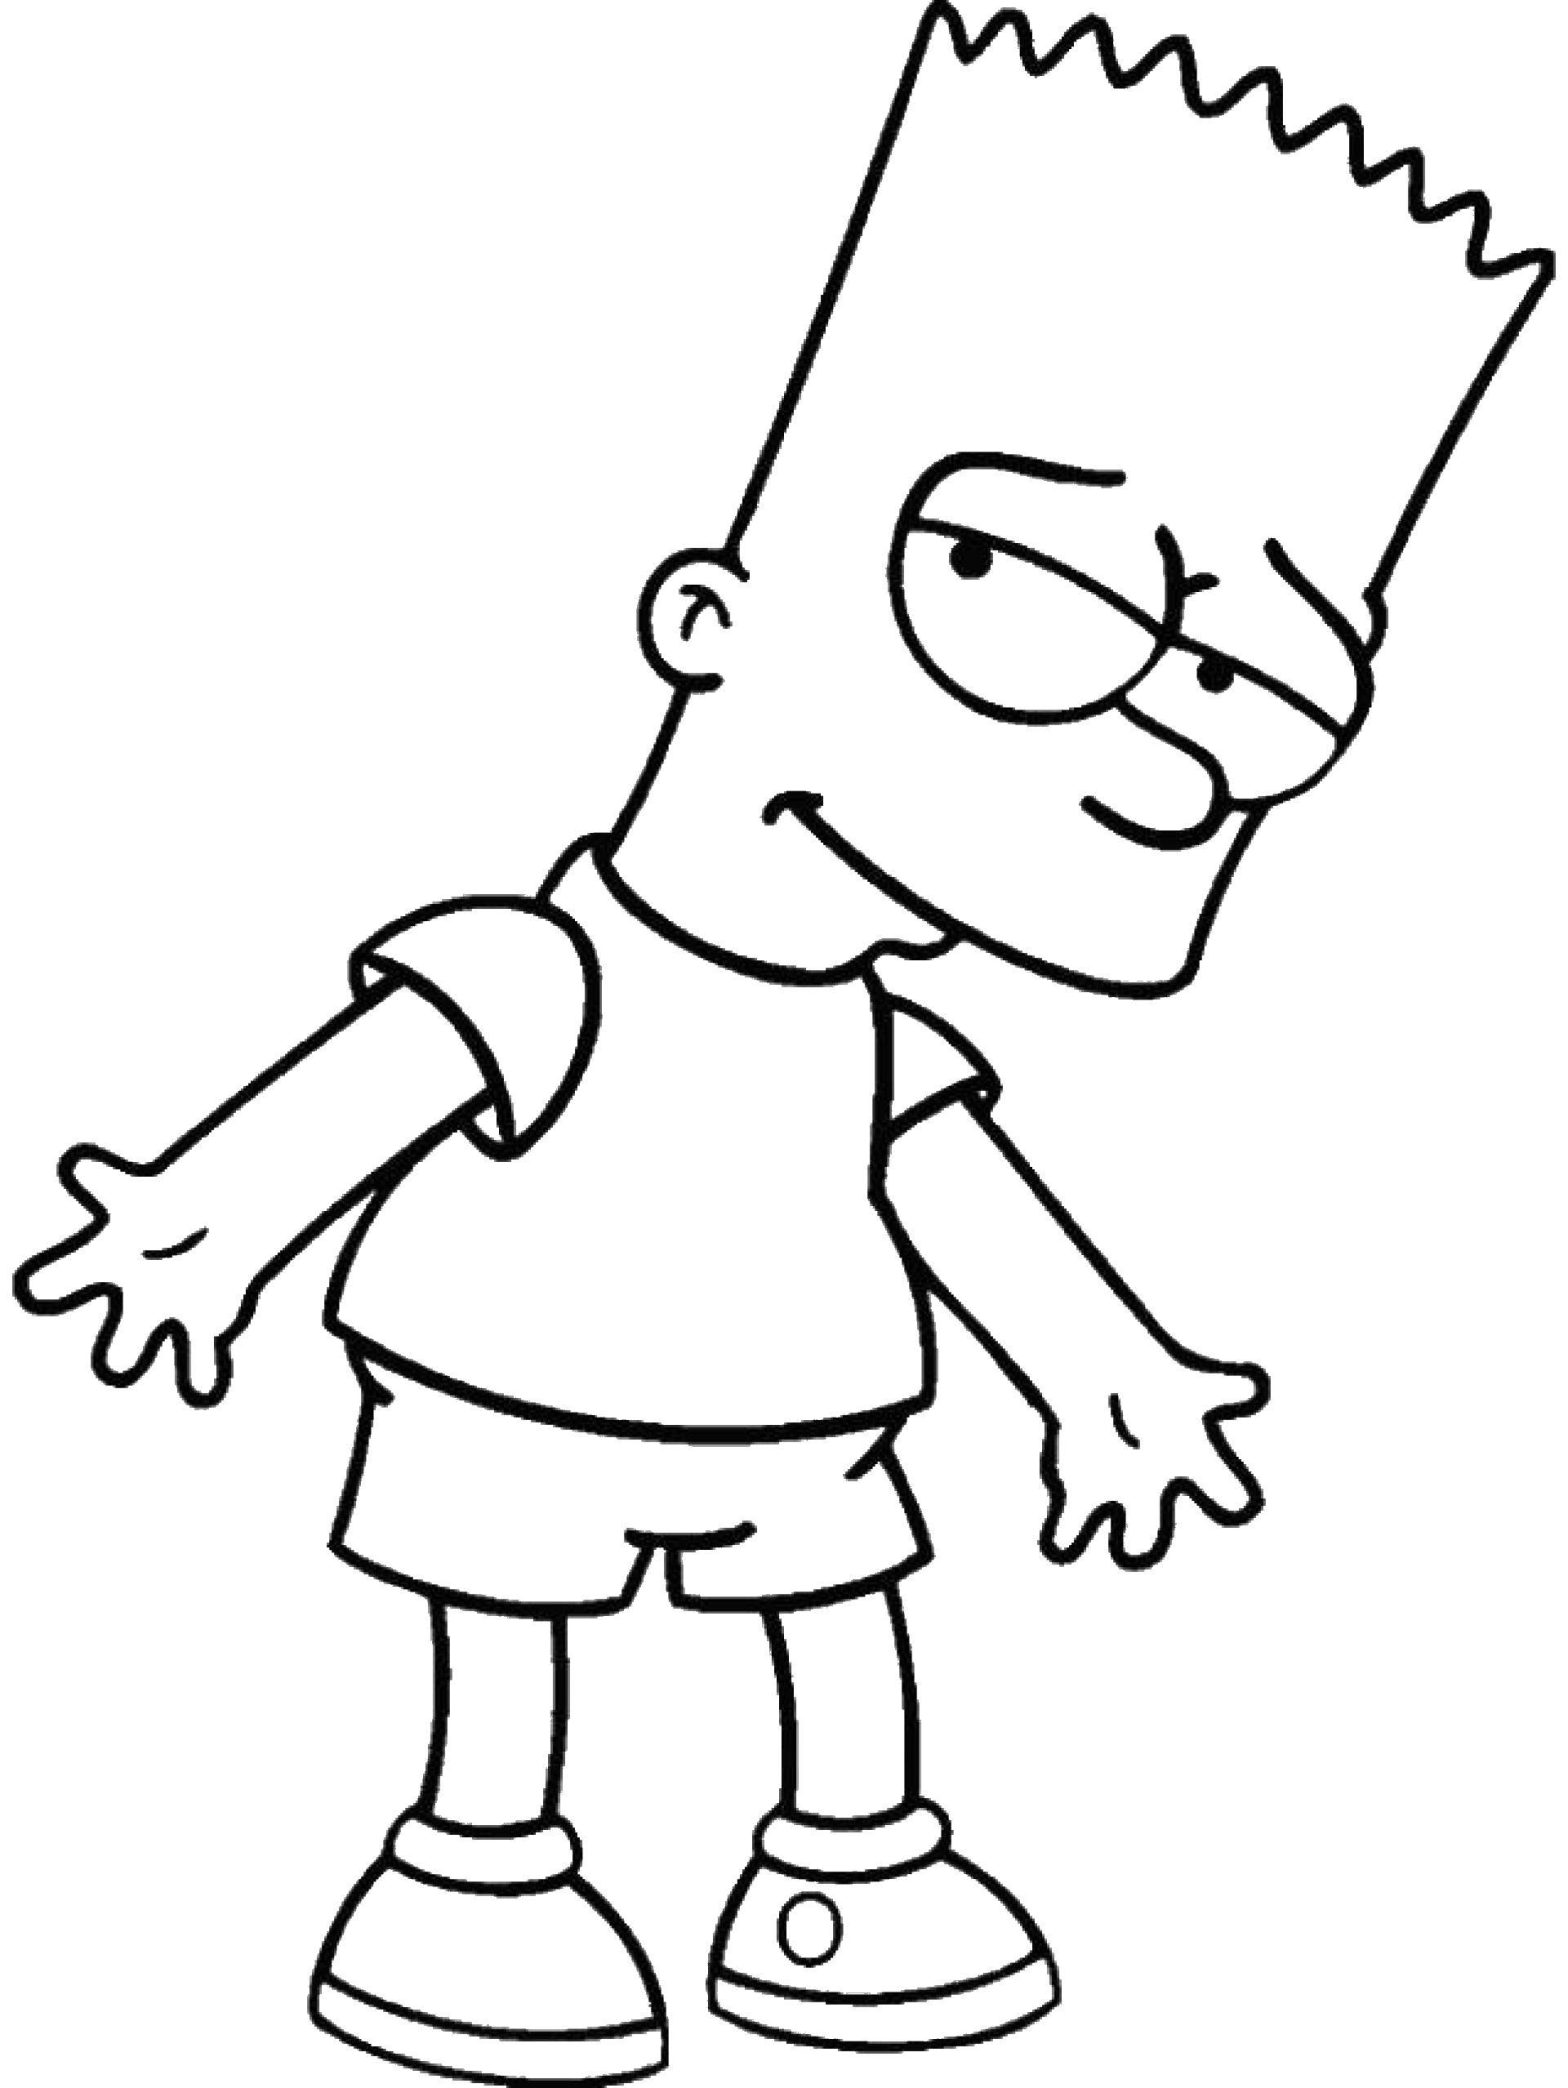 Раскраска Симпсоны Барт для мальчиков (Симпсоны, Барт)